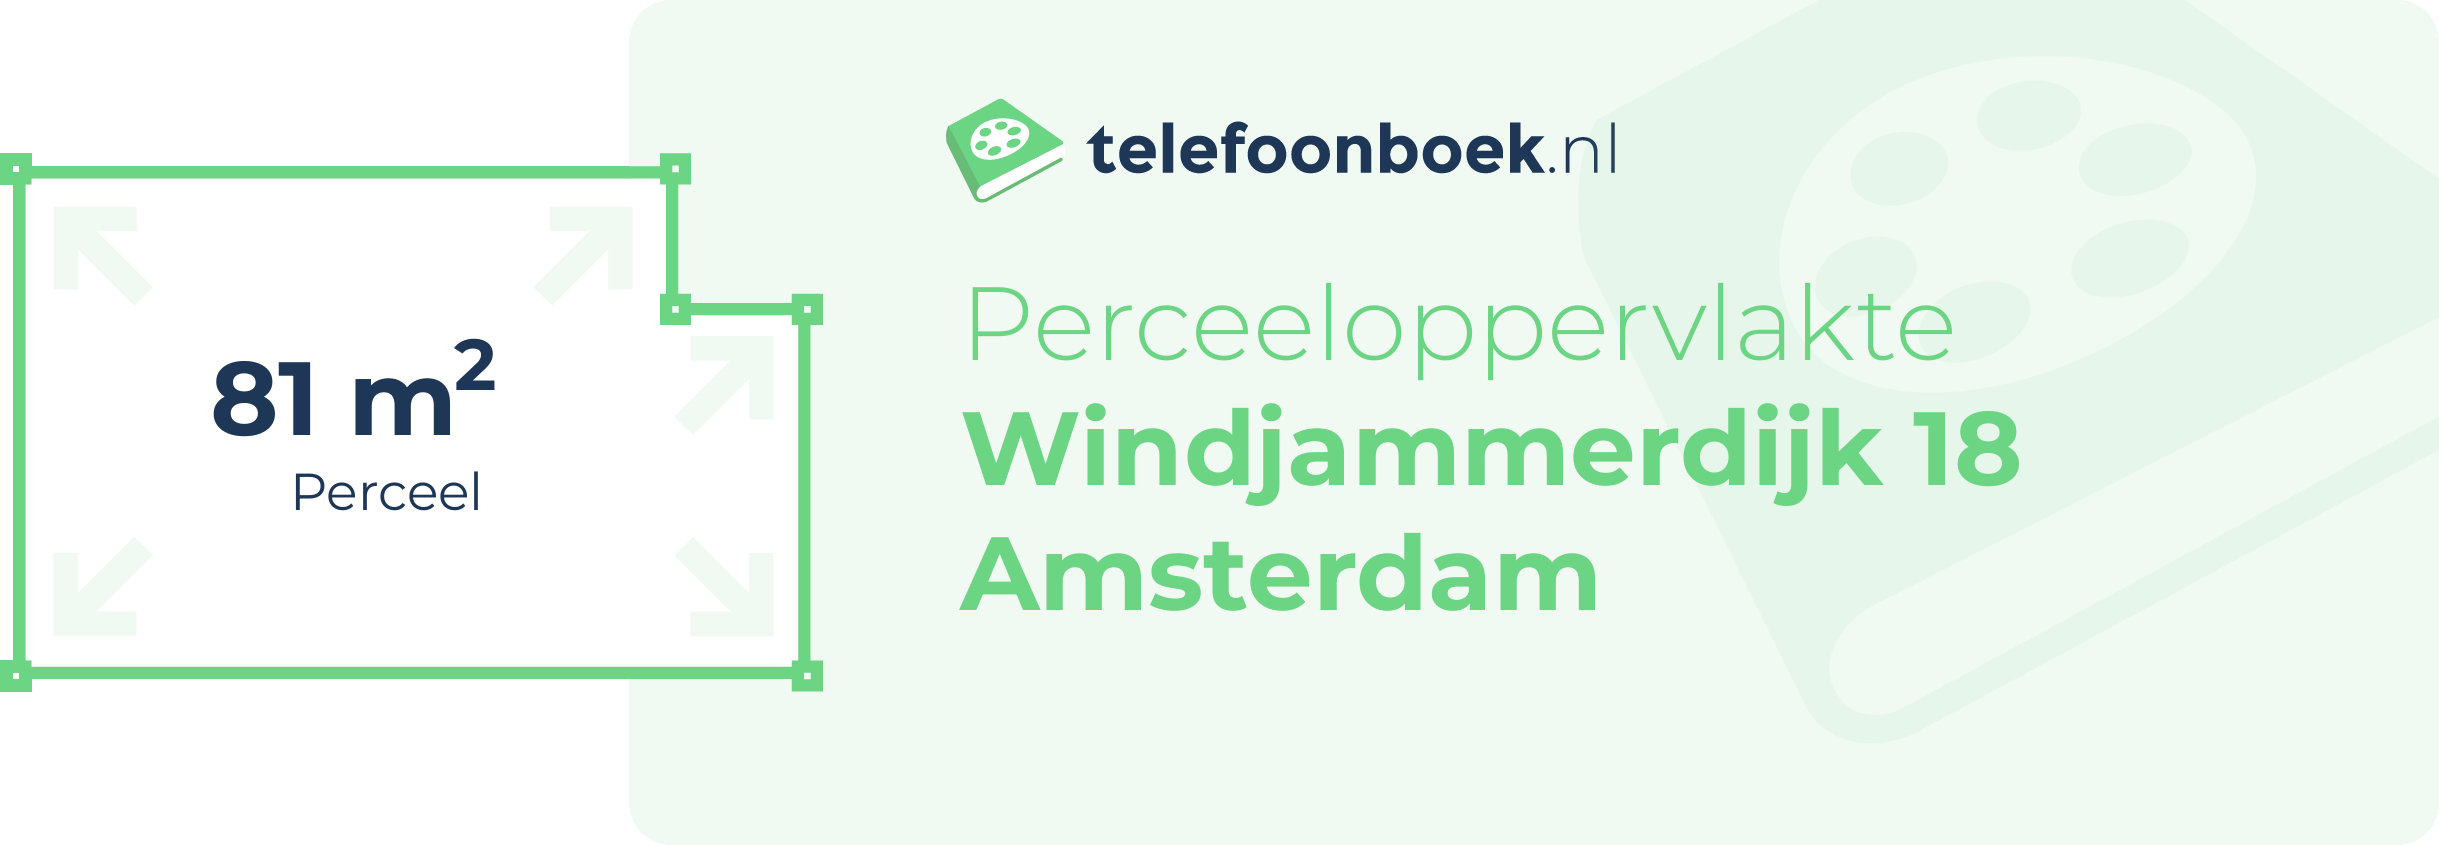 Perceeloppervlakte Windjammerdijk 18 Amsterdam